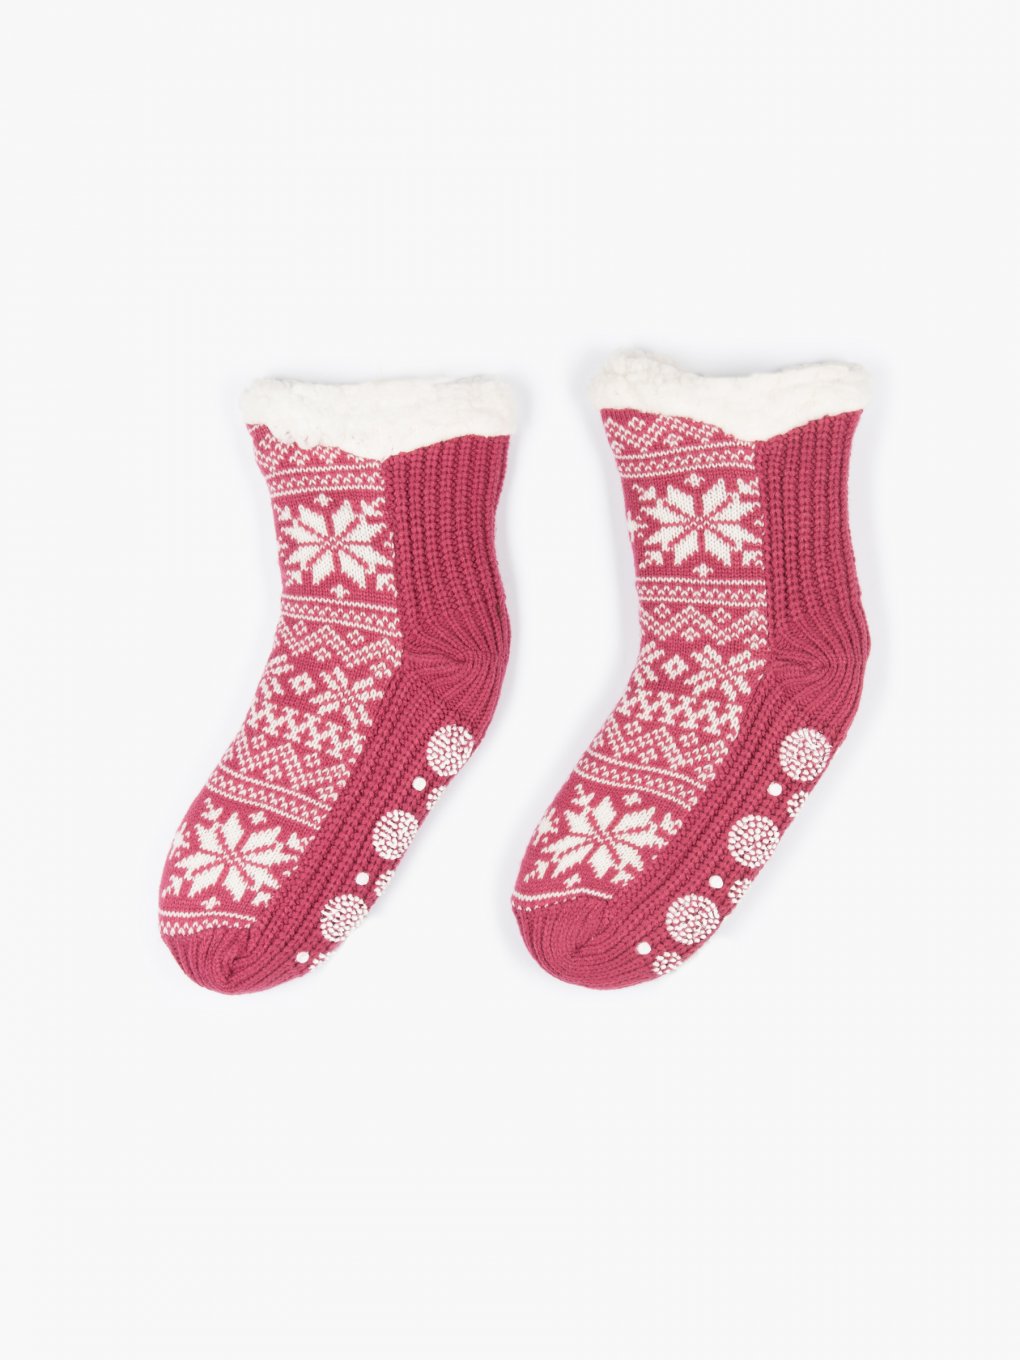 Sherpa lined knitted slipper socks